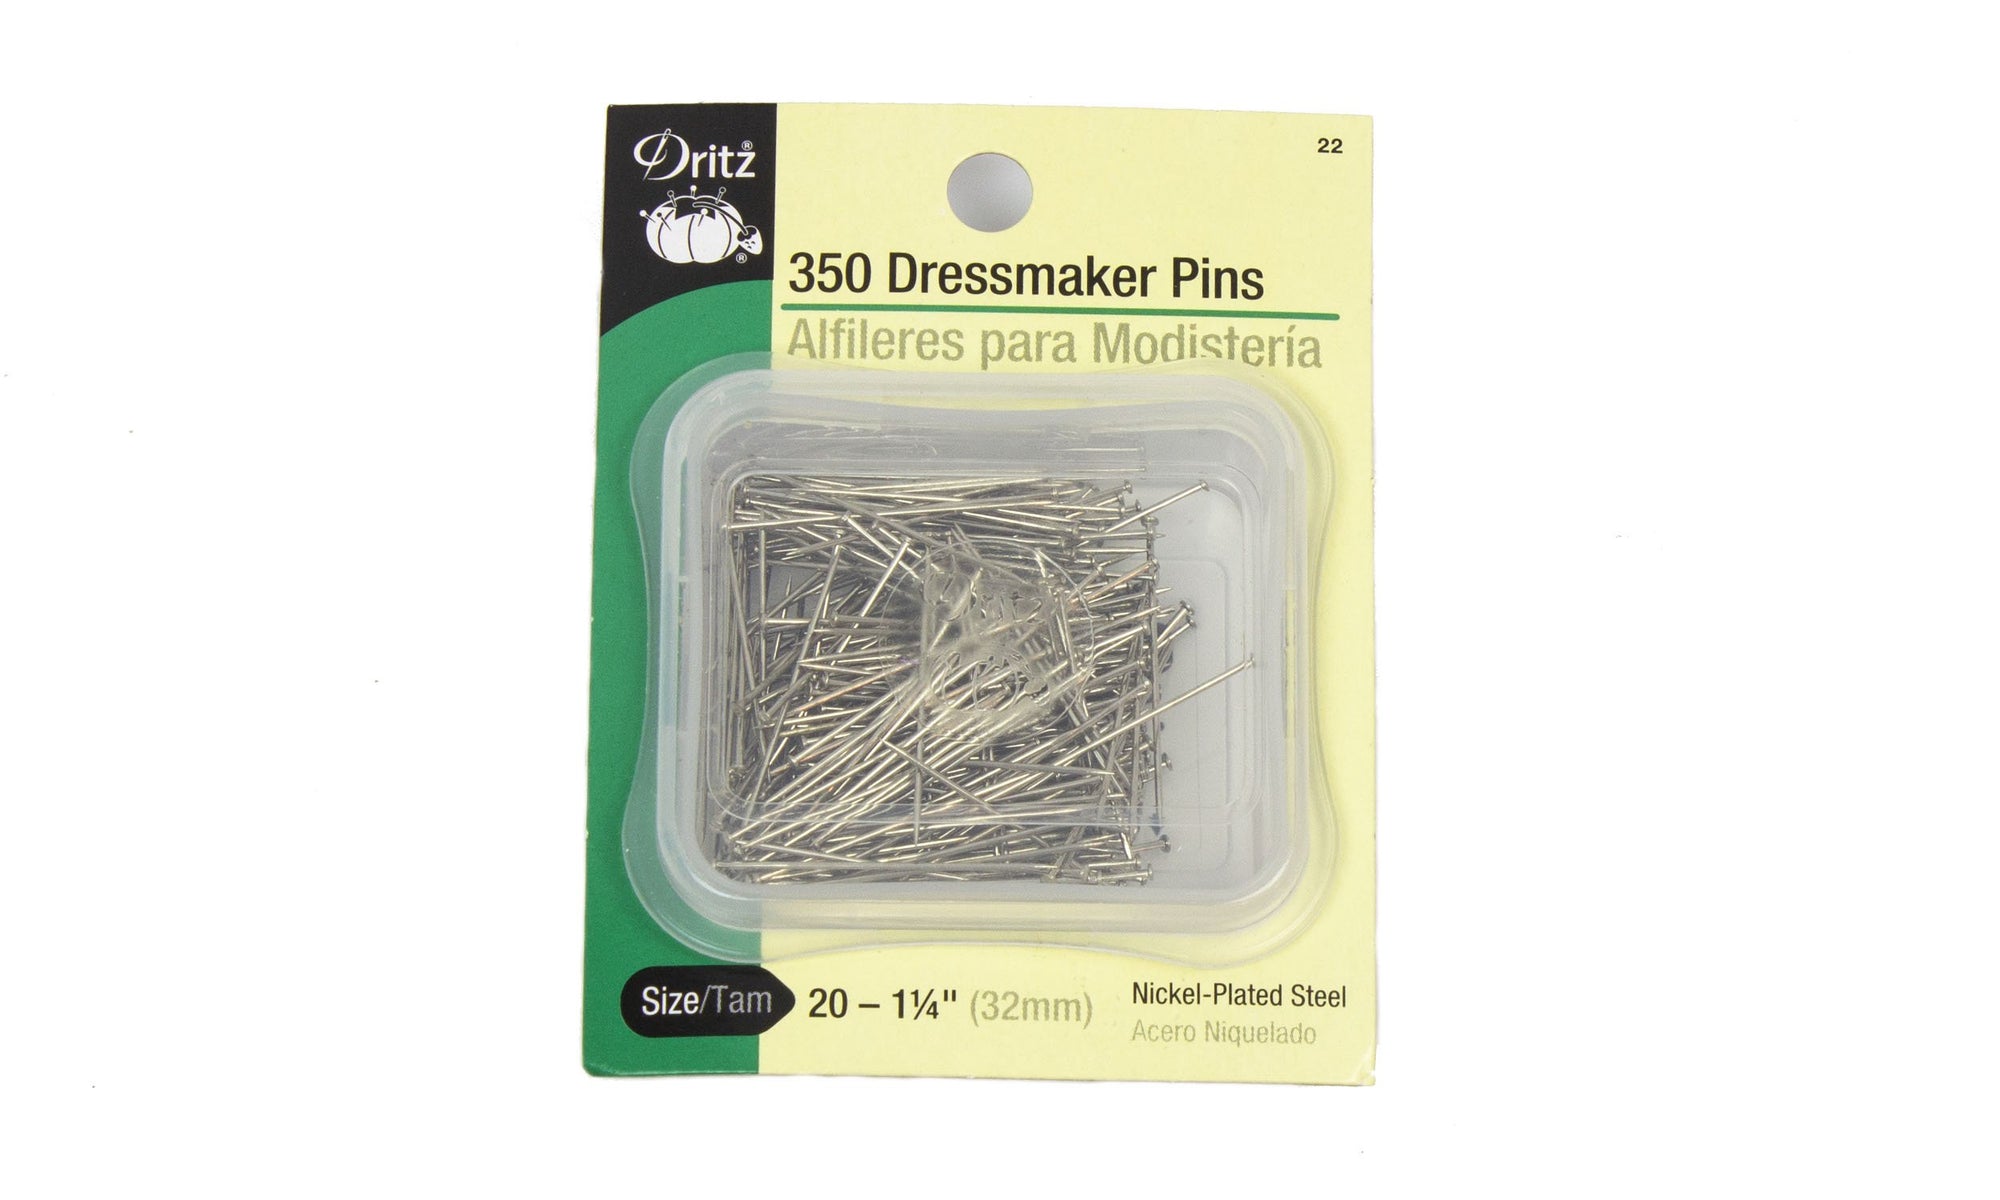 Dress Maker Pins